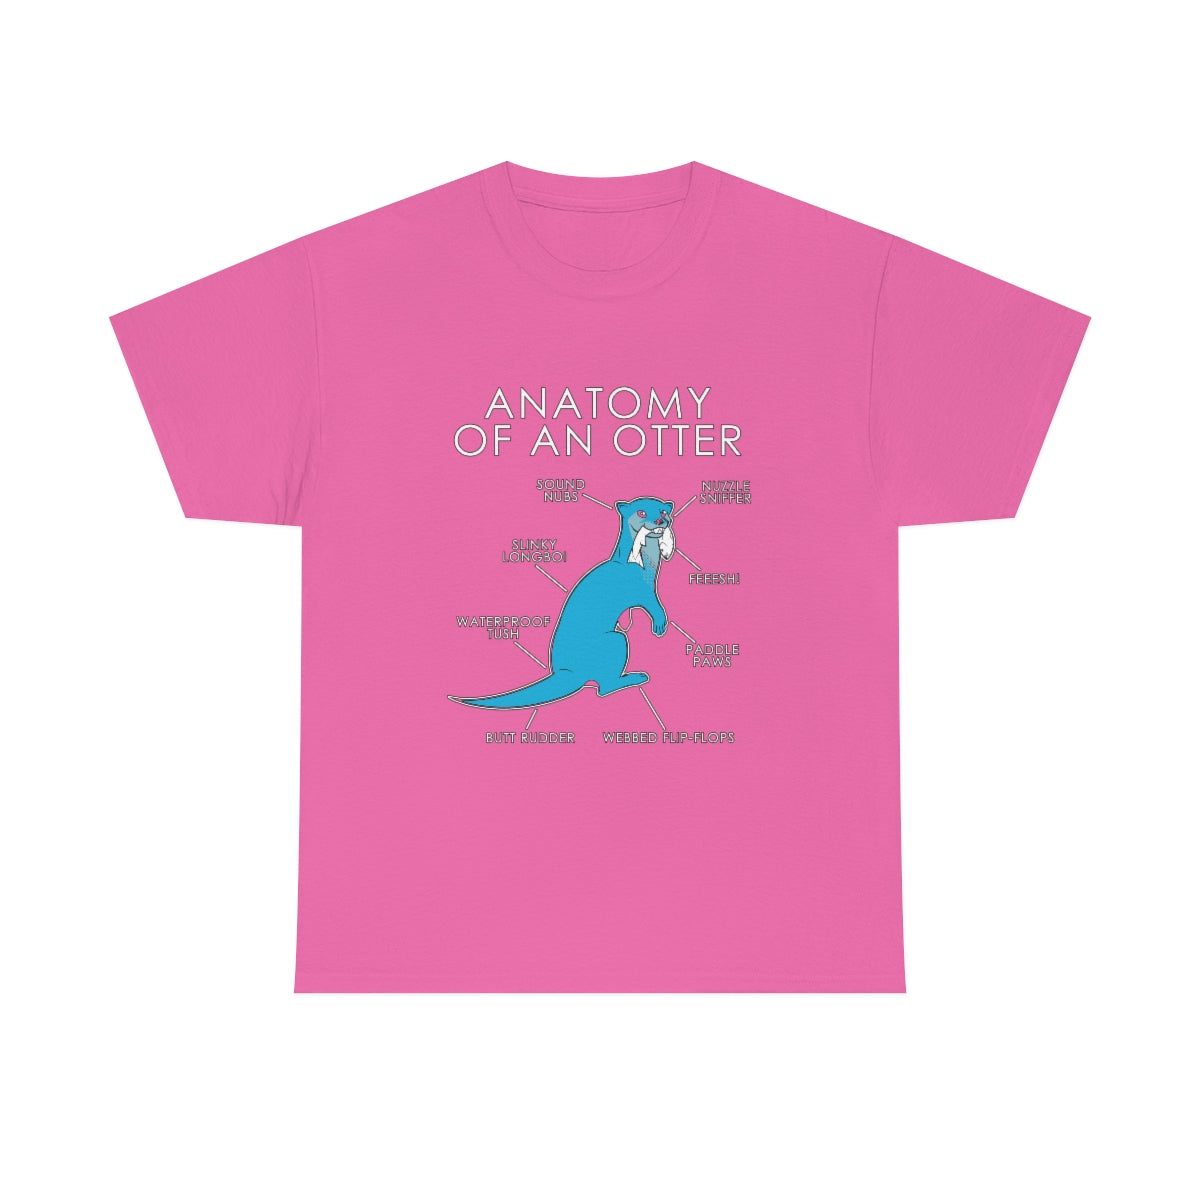 Otter Light Blue - T-Shirt T-Shirt Artworktee Pink S 